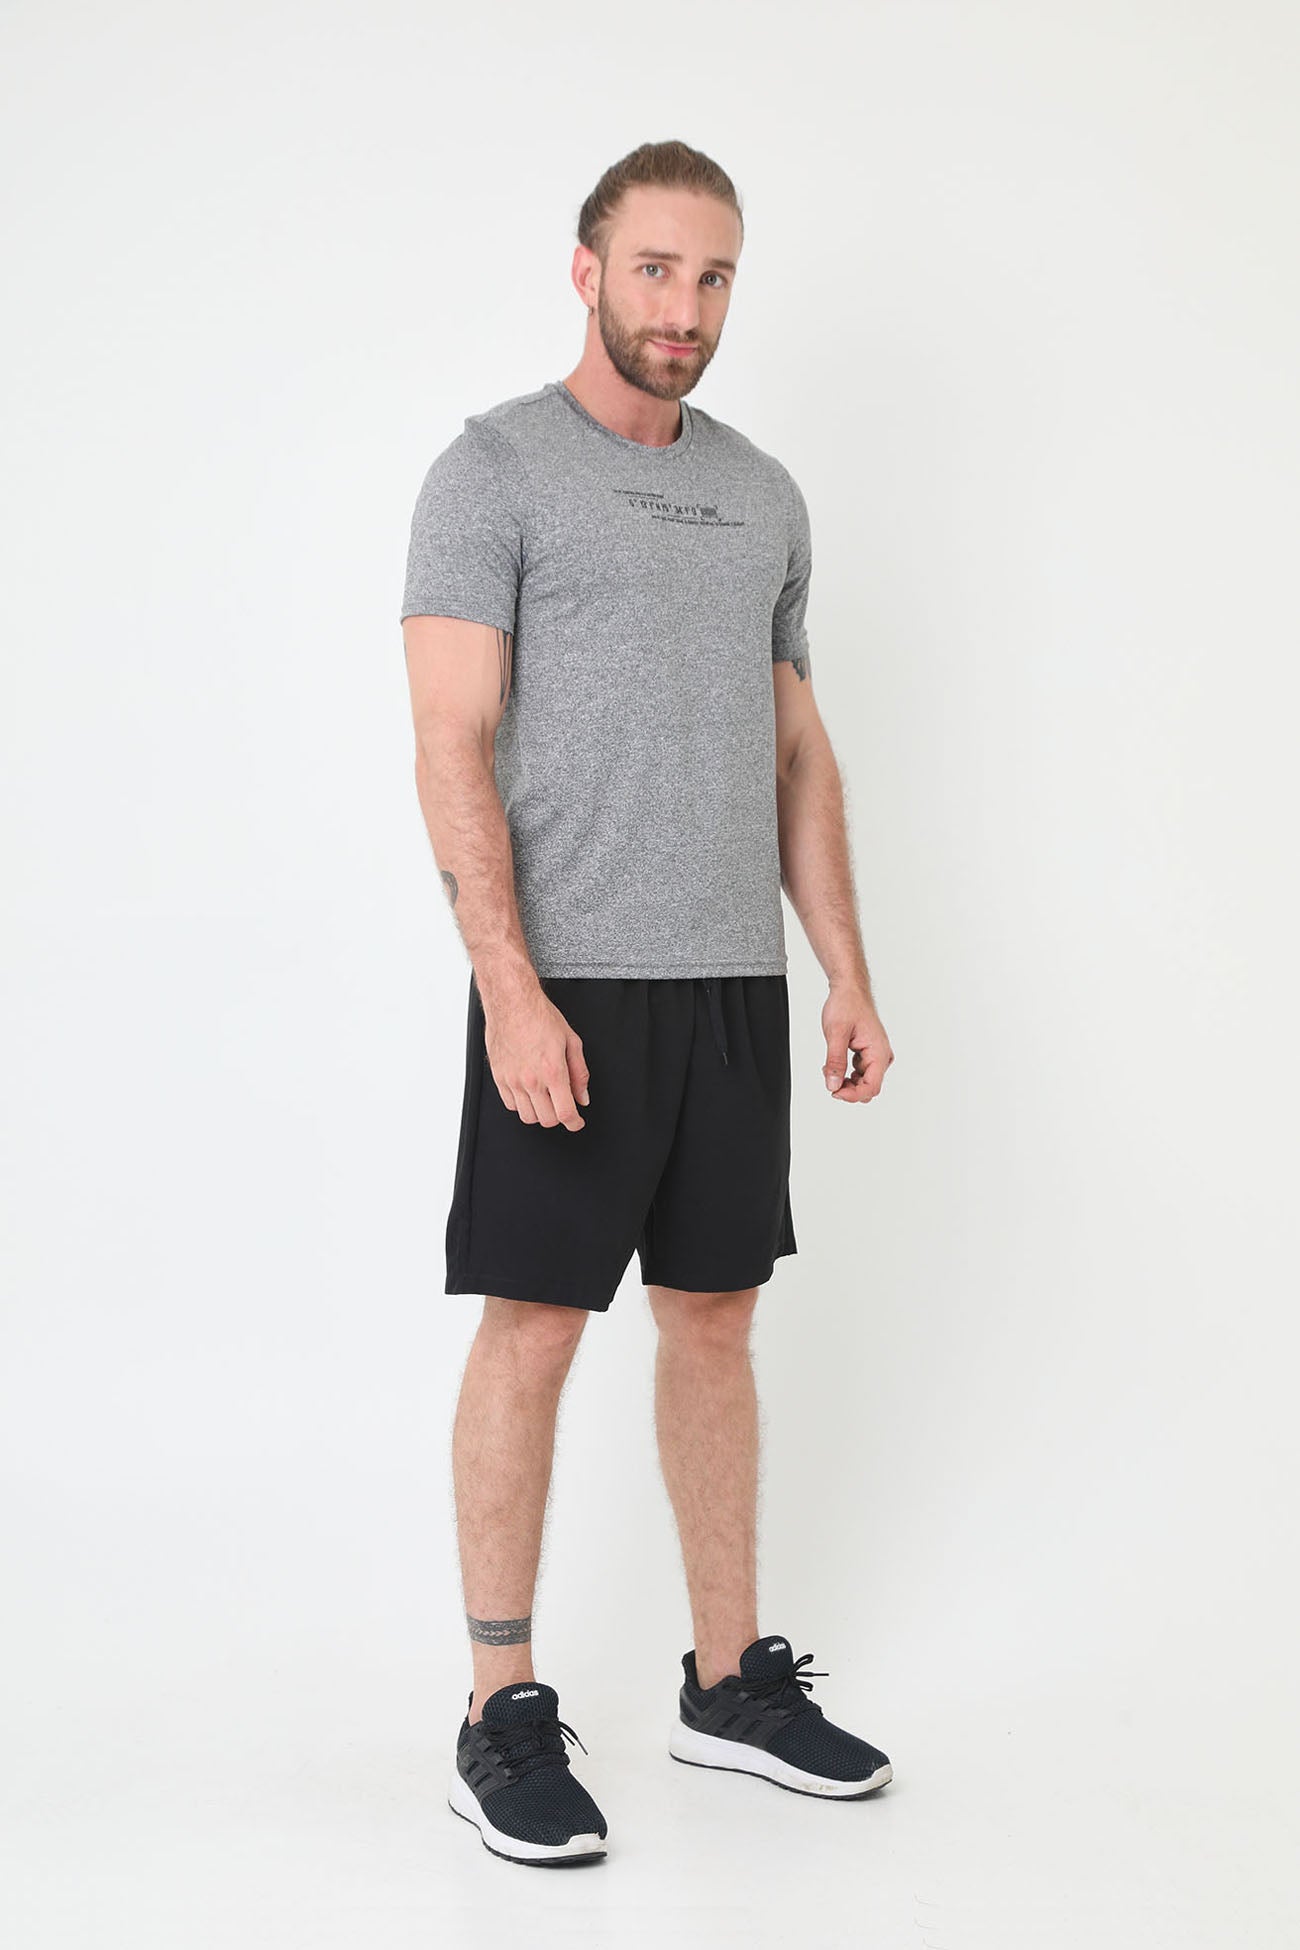 Camiseta deportiva gris manga corta, bloque en centro espalda y cuello redondo para hombre